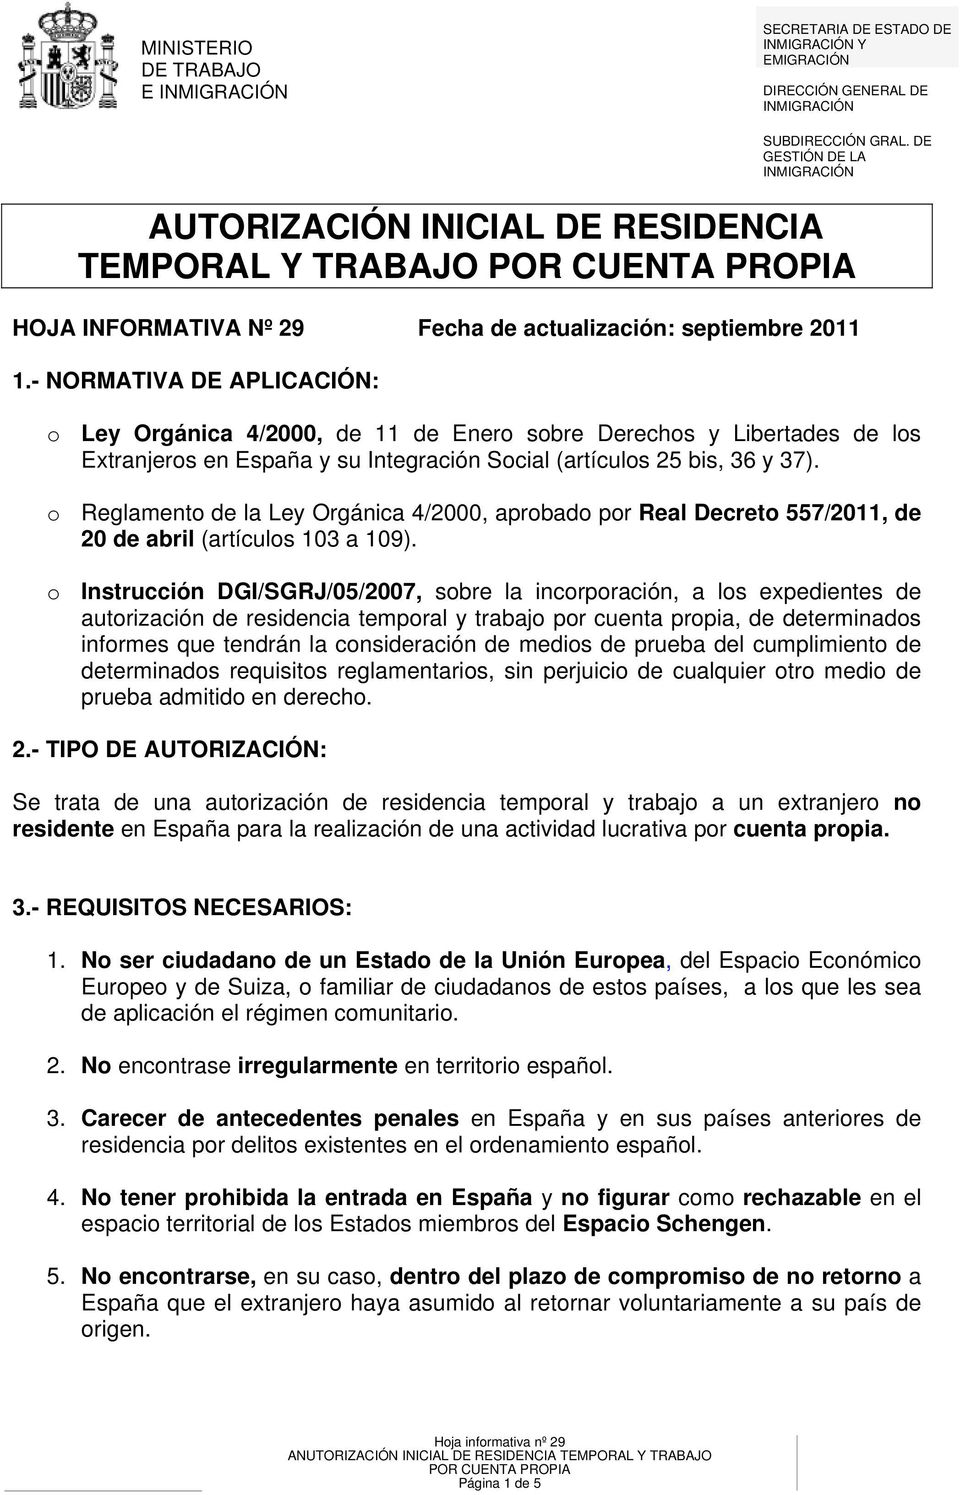 - NORMATIVA DE APLICACIÓN: o Ley Orgánica 4/2000, de 11 de Enero sobre Derechos y Libertades de los Extranjeros en España y su Integración Social (artículos 25 bis, 36 y 37).